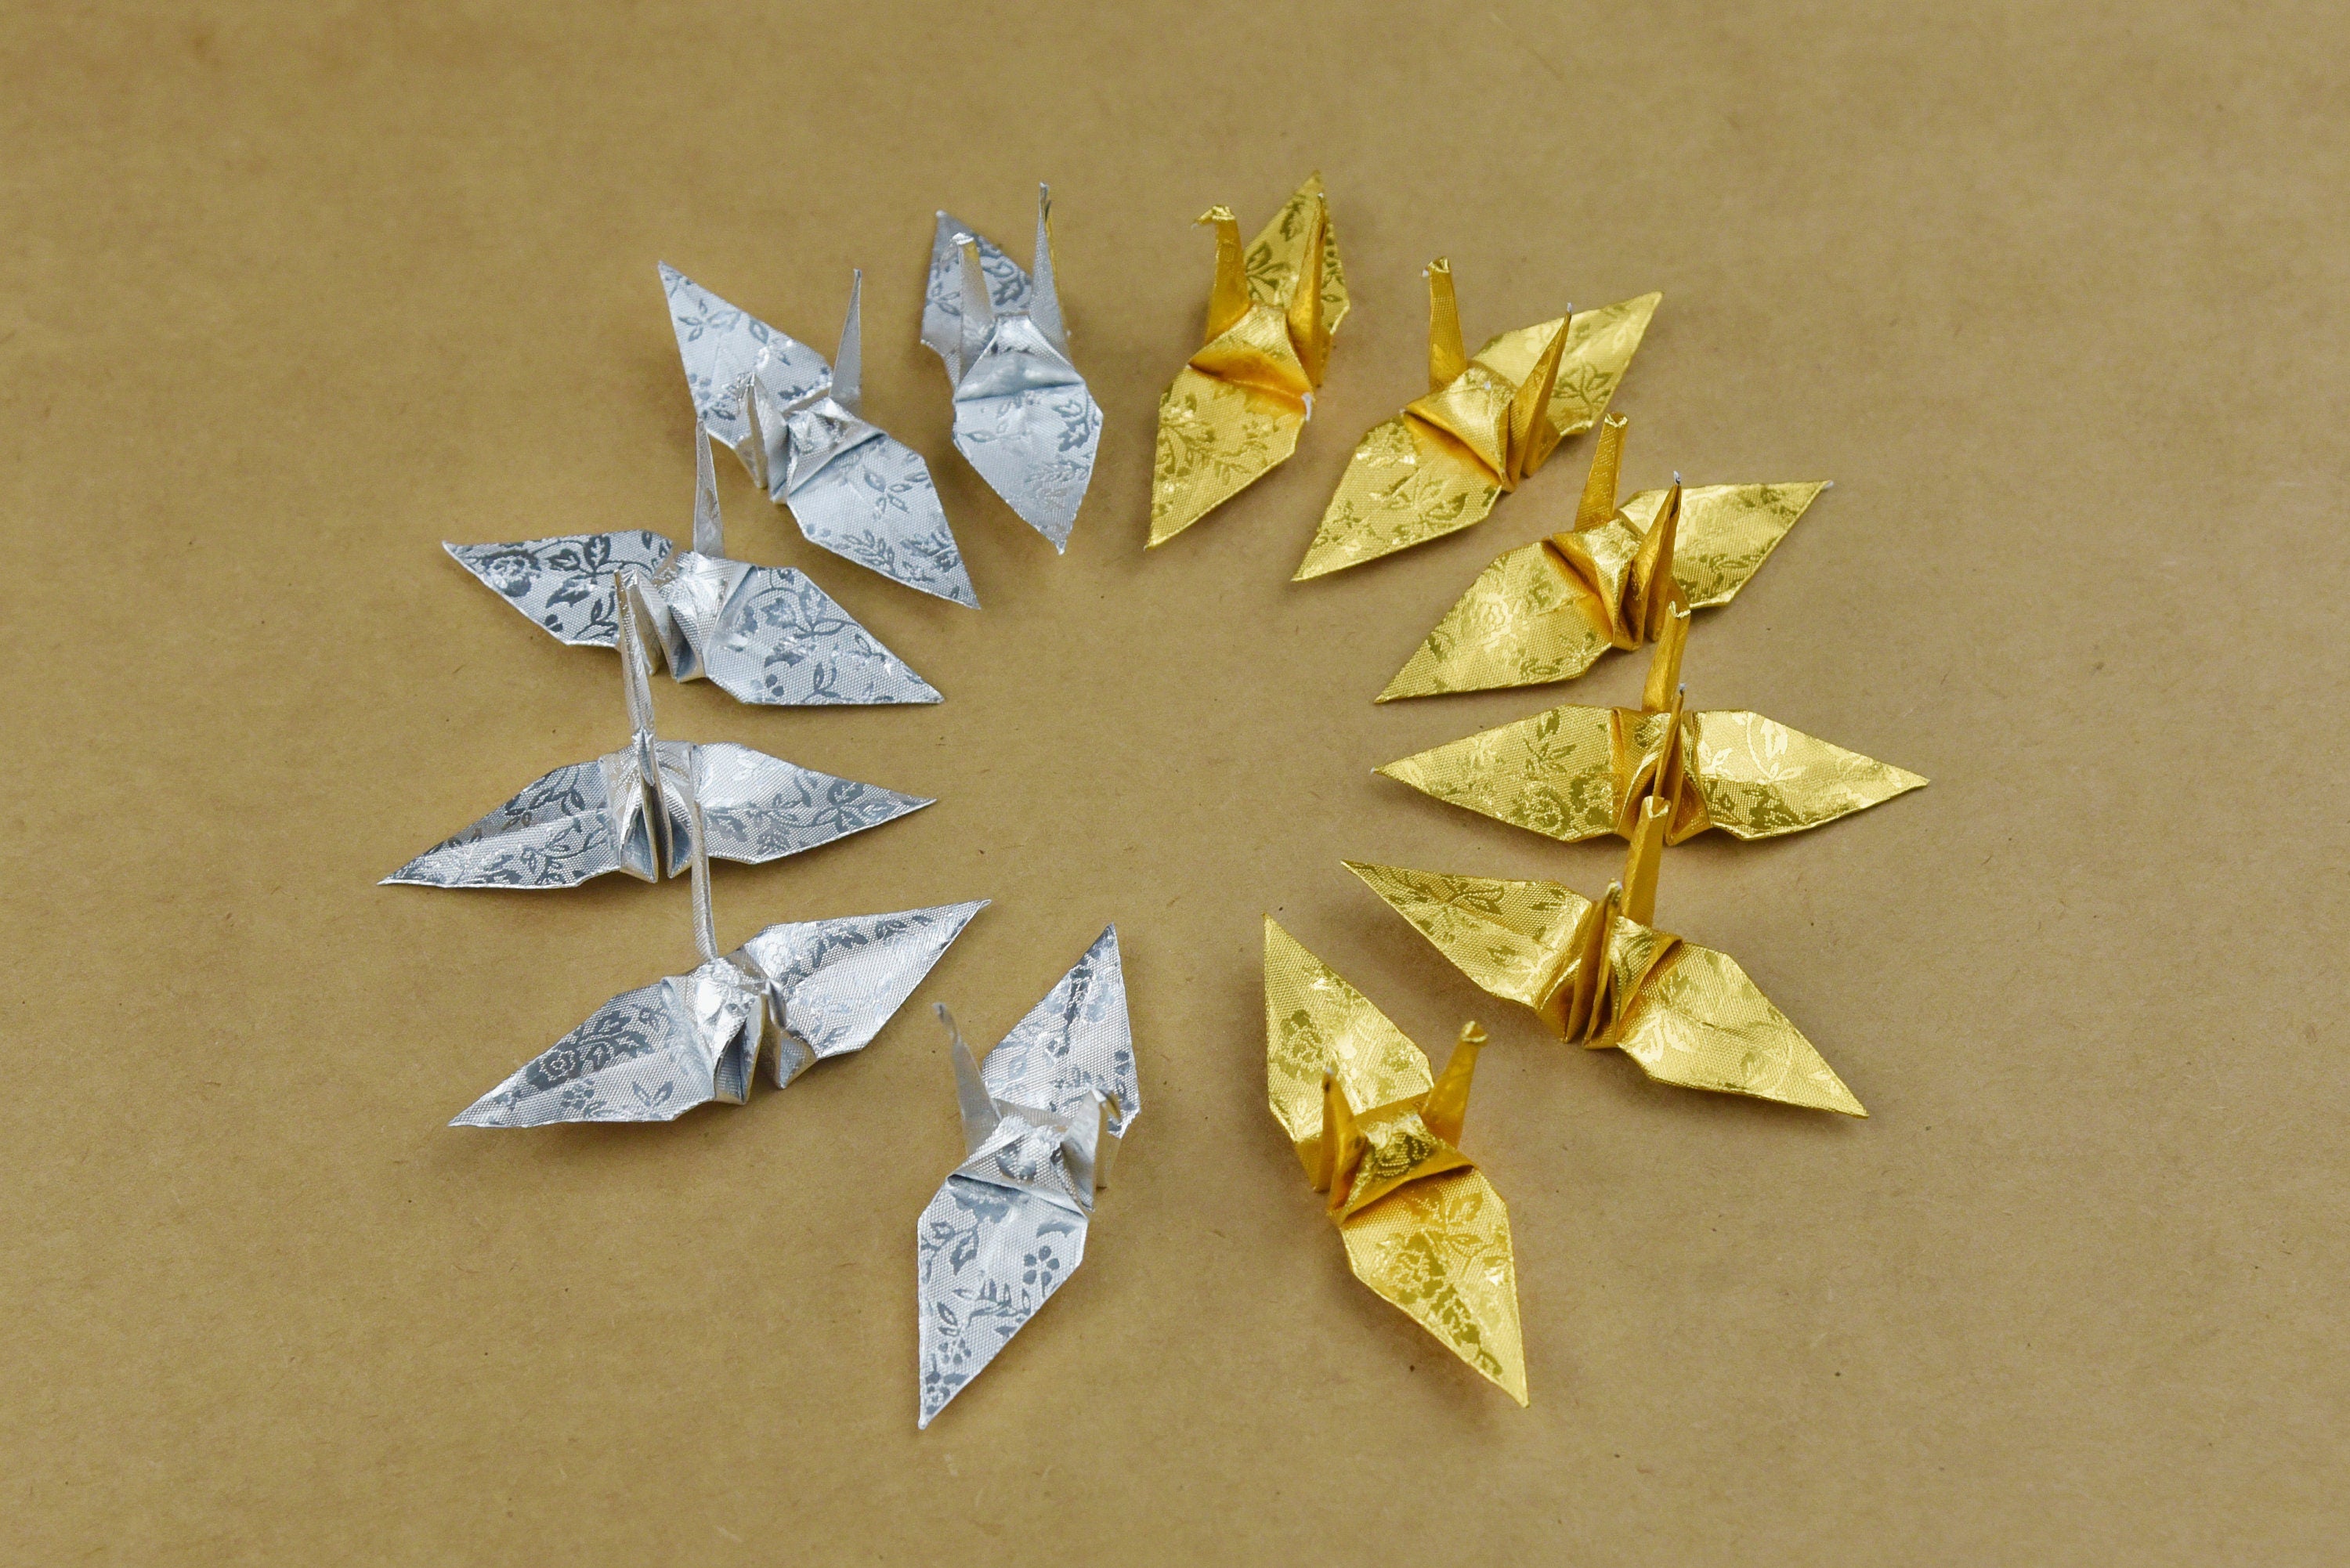 100 gru di carta origami - oro argento con motivo a rose - piccola 1,5 pollici - per ornamento, regalo di nozze, decorazione